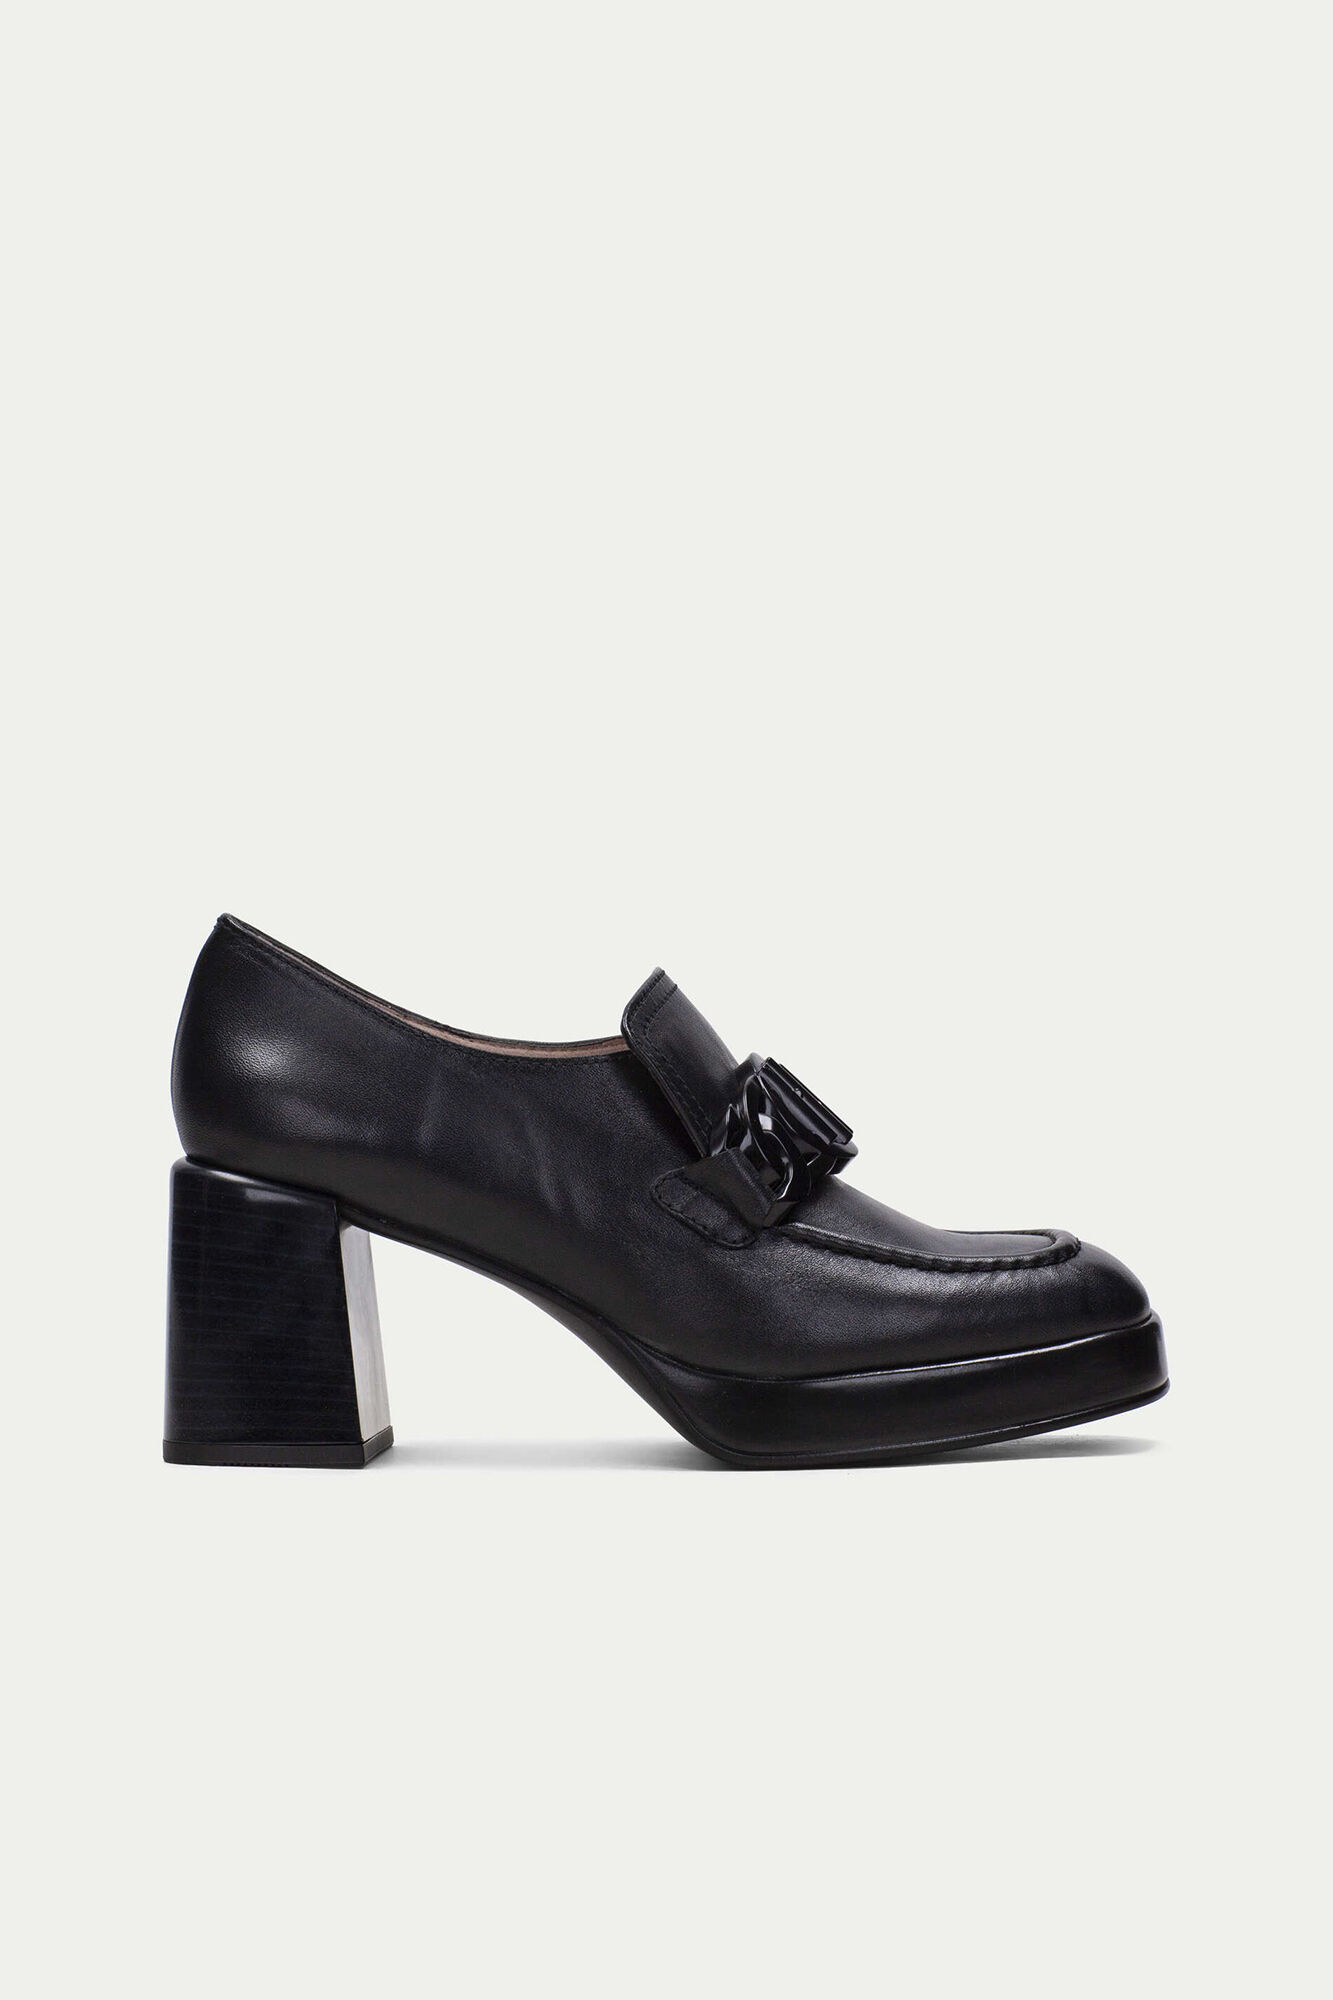 Tokyo double H embellished platform loafer | Women's shoes | Cortefiel